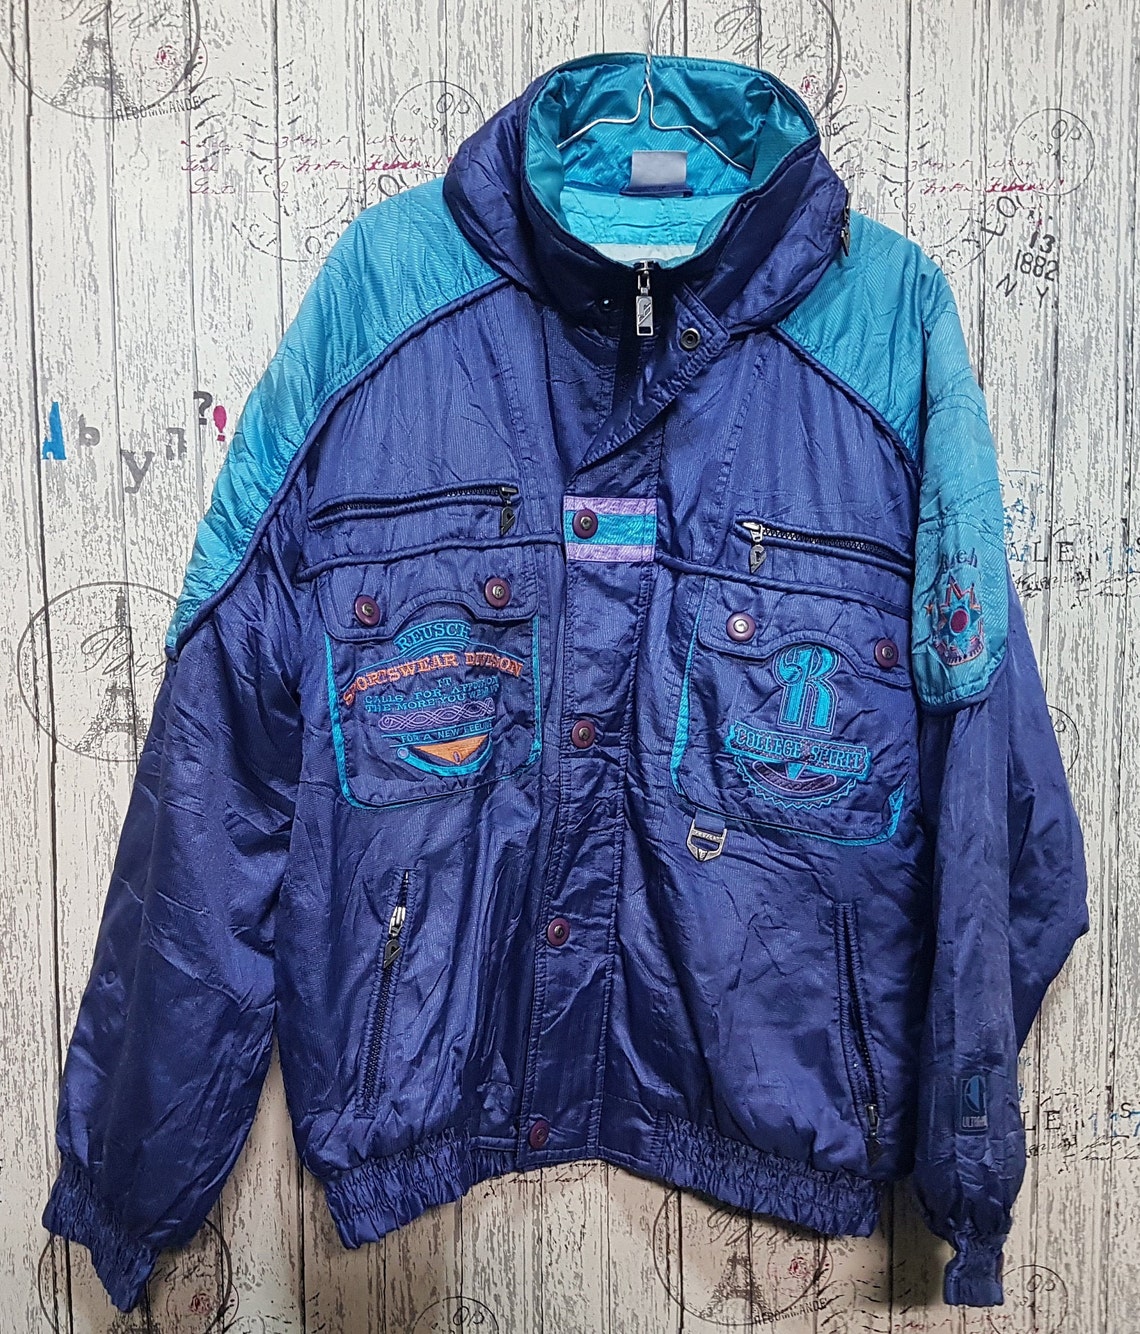 Retro Snow Reusch jacket Excellent Condition Ski Suit Jacket | Etsy